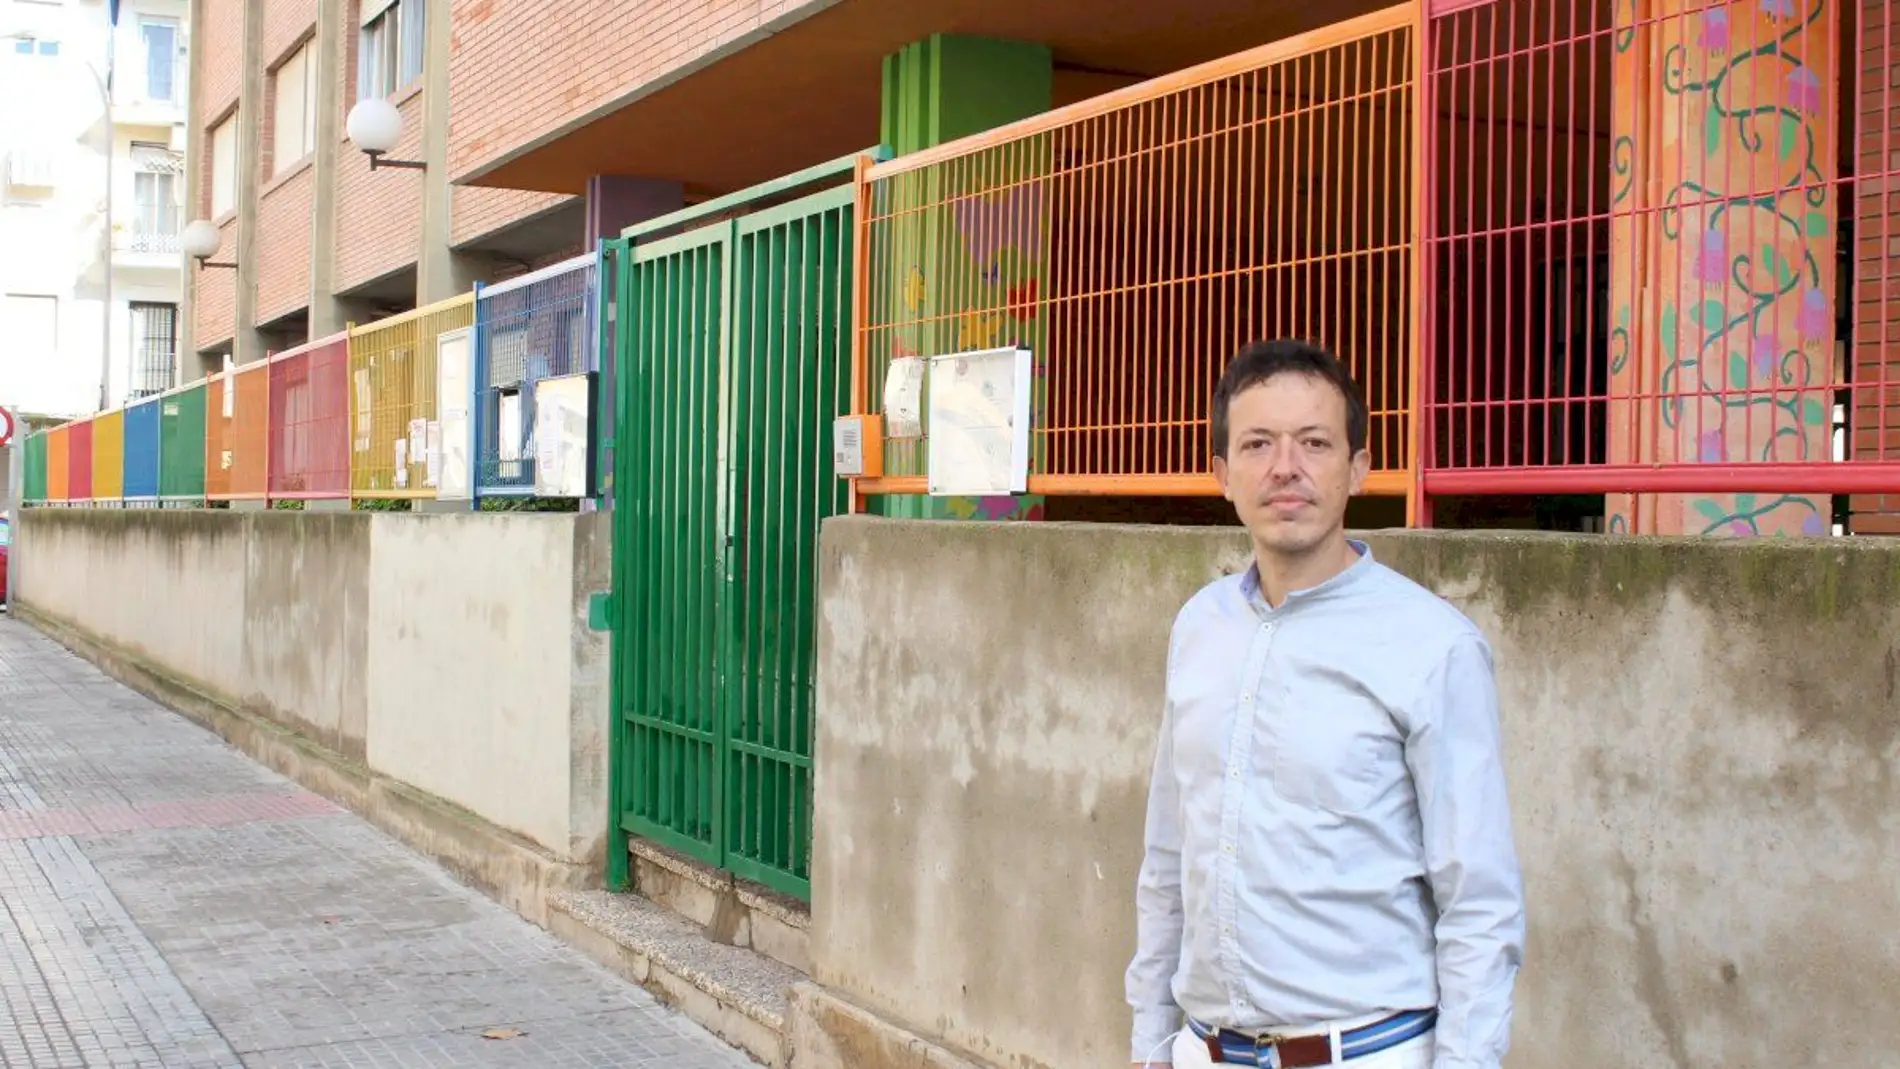  Luz verde para construir el nuevo colegio Elcano